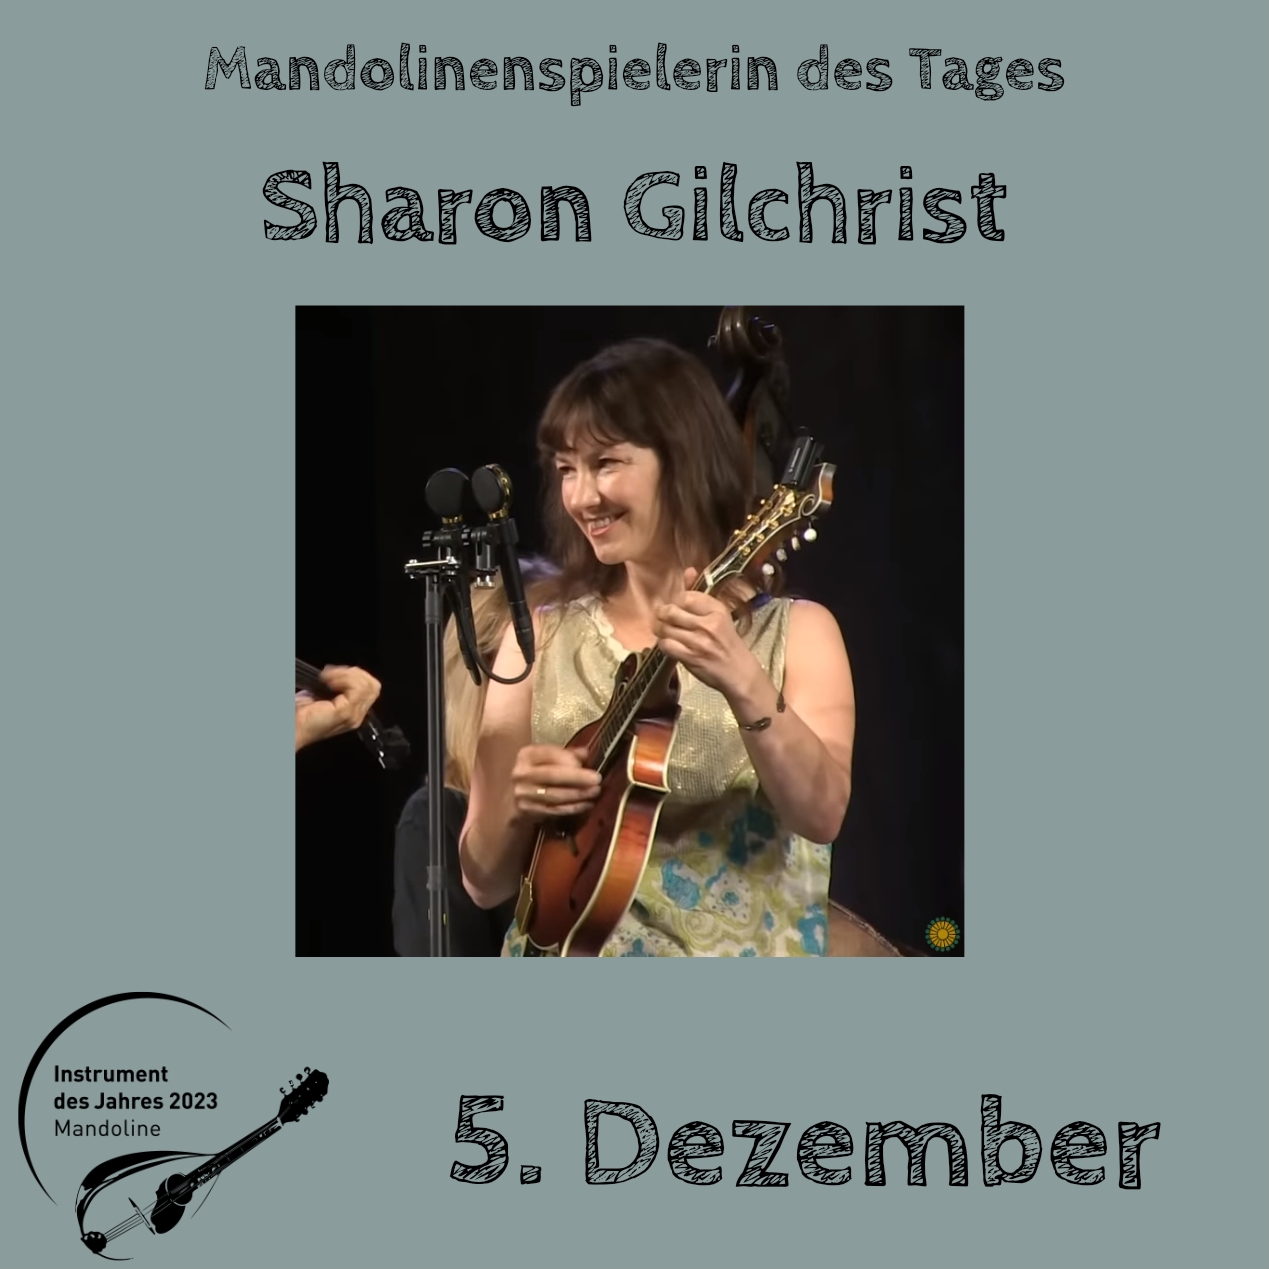 5. Dezember - Sharon Gilchrist Instrument des Jahres 2023 Mandolinenspieler Mandolinenspielerin des Tages